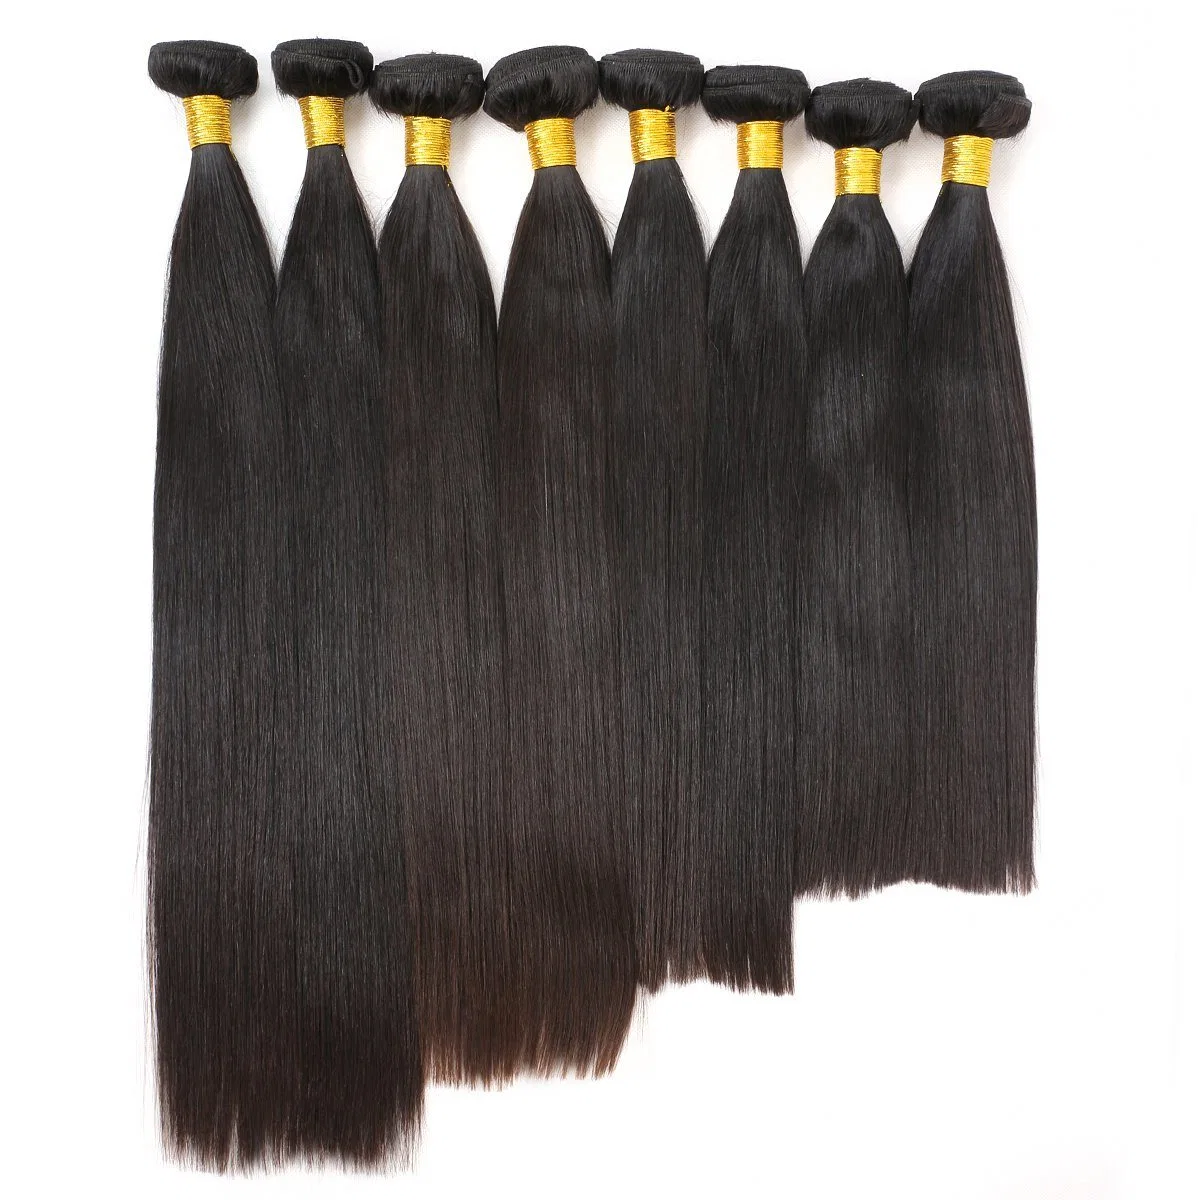 Sur la ligne droite de la beauté des cheveux malaisien brésilien naturel noir 100 % couleur des cheveux humains tissent Bundles Remy Hair 8-28 pouces